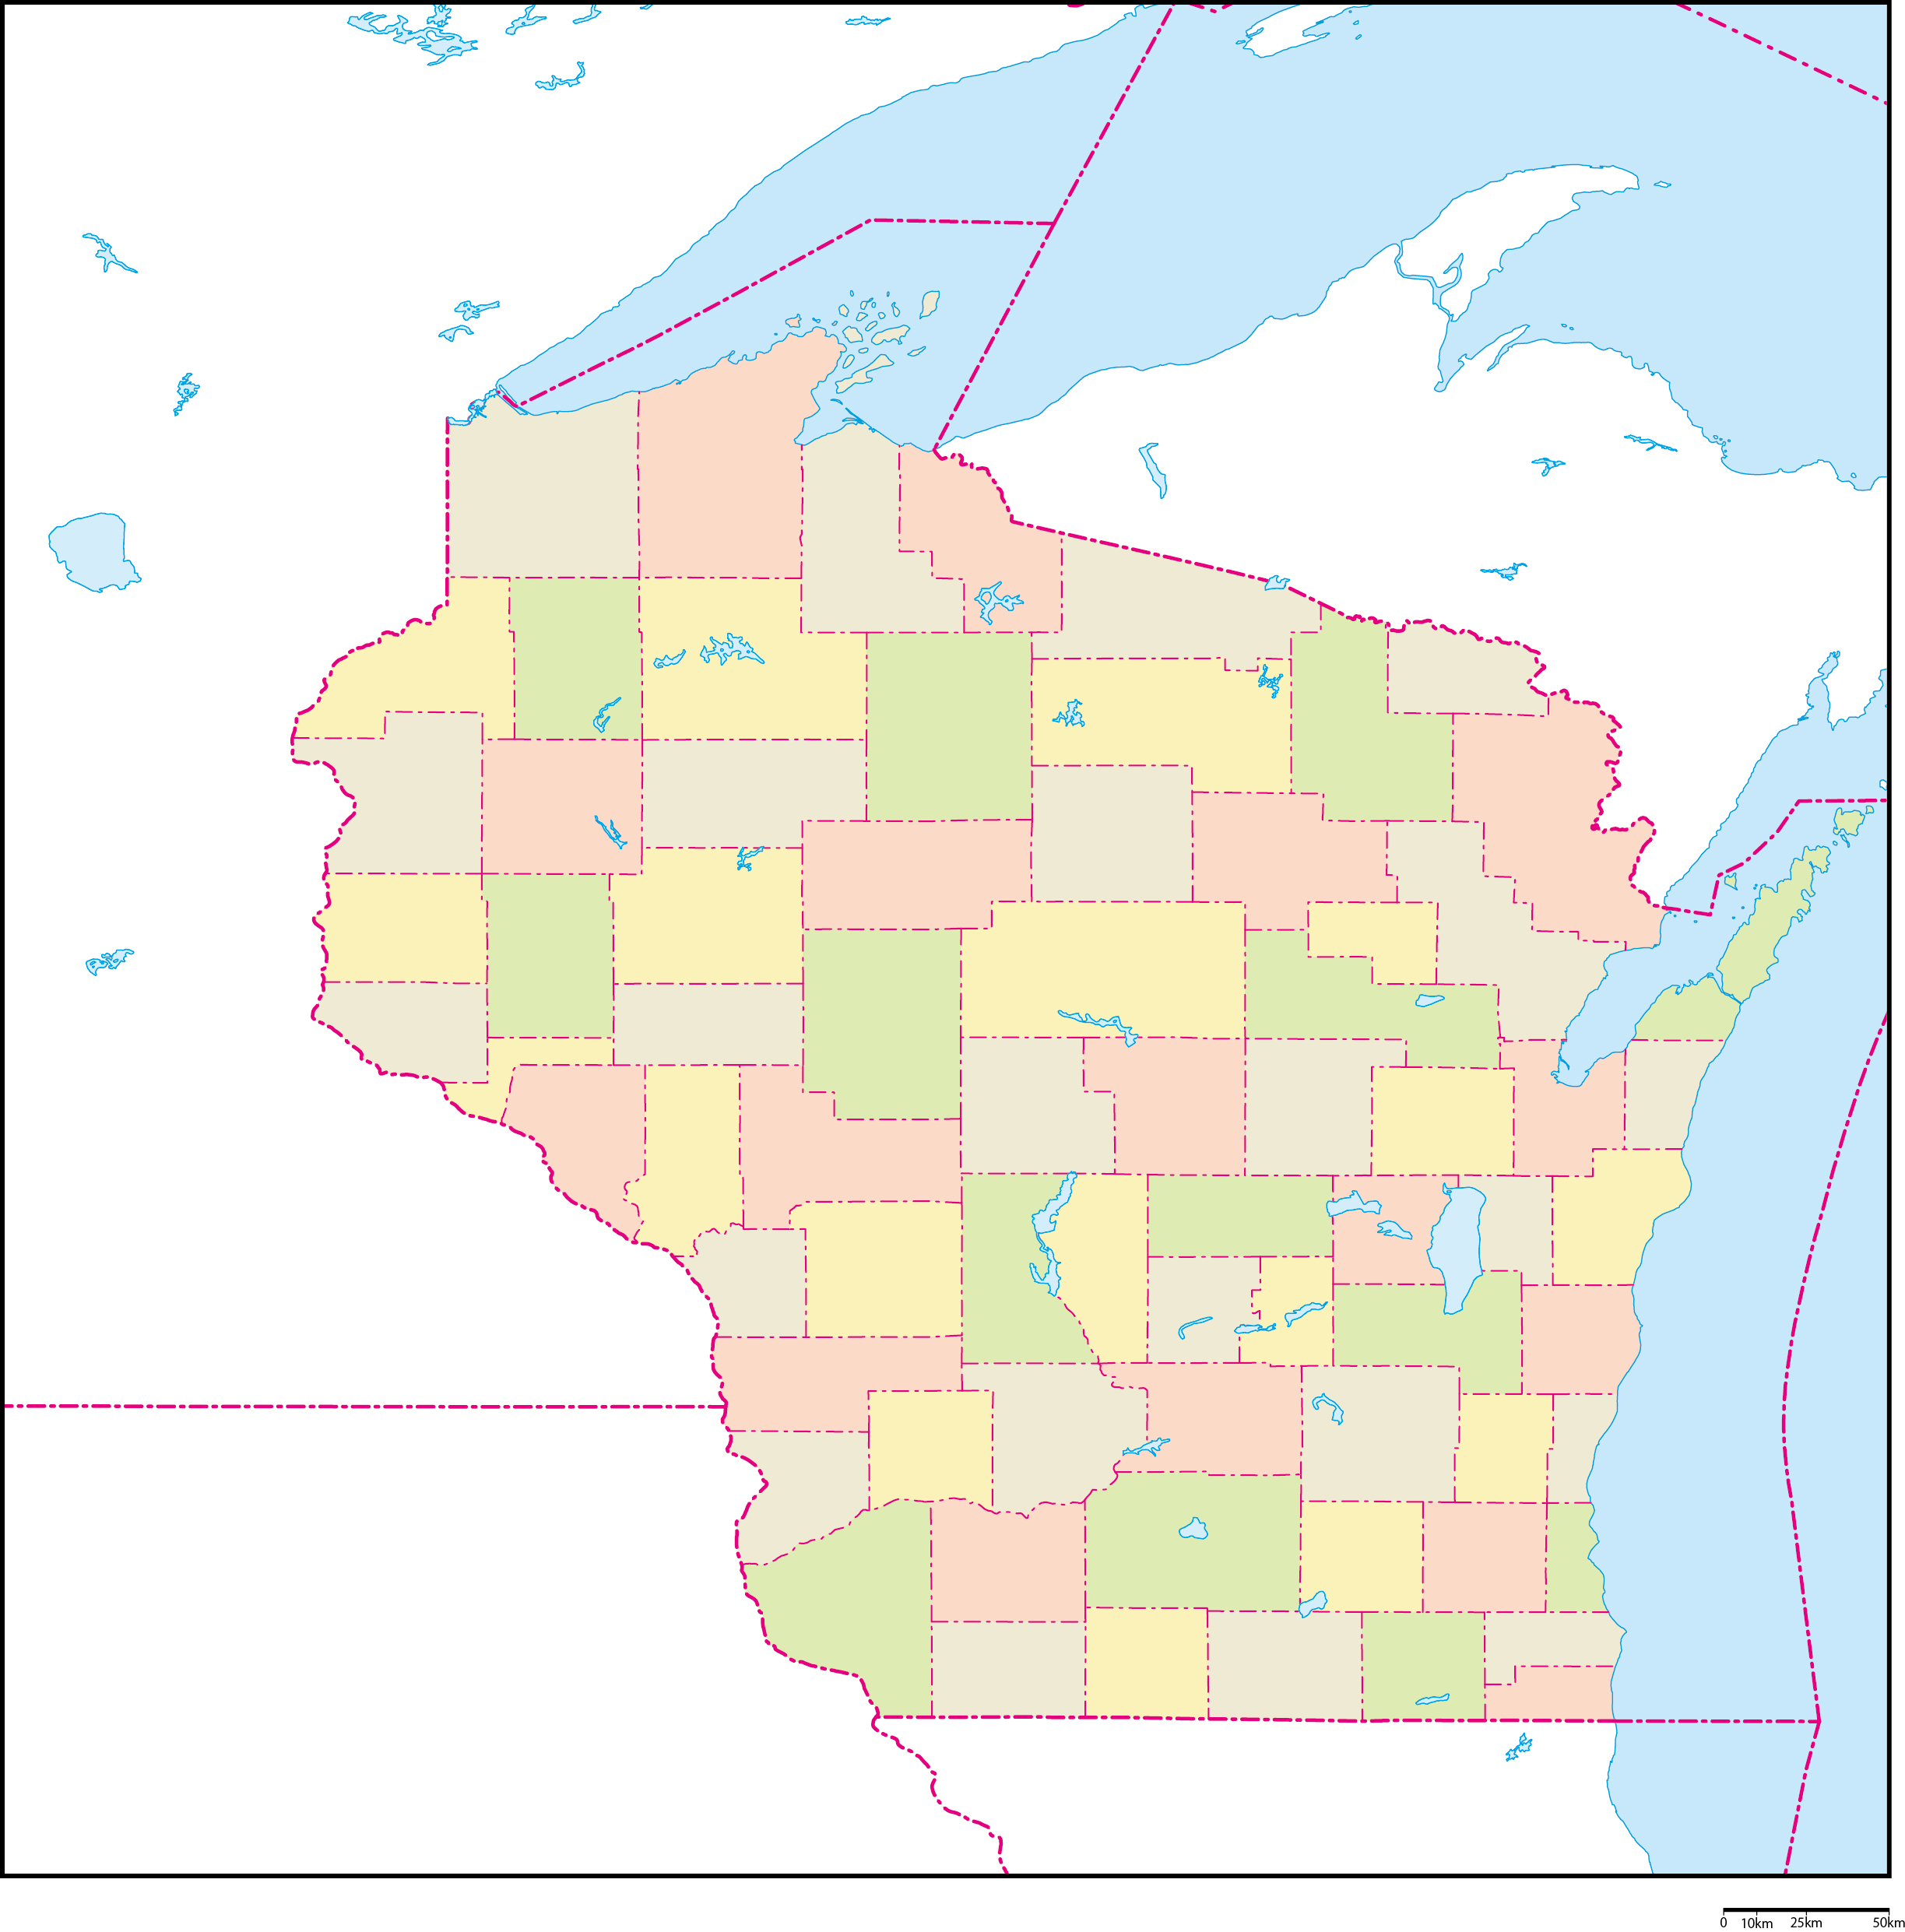 ウィスコンシン州郡色分け地図フリーデータの画像